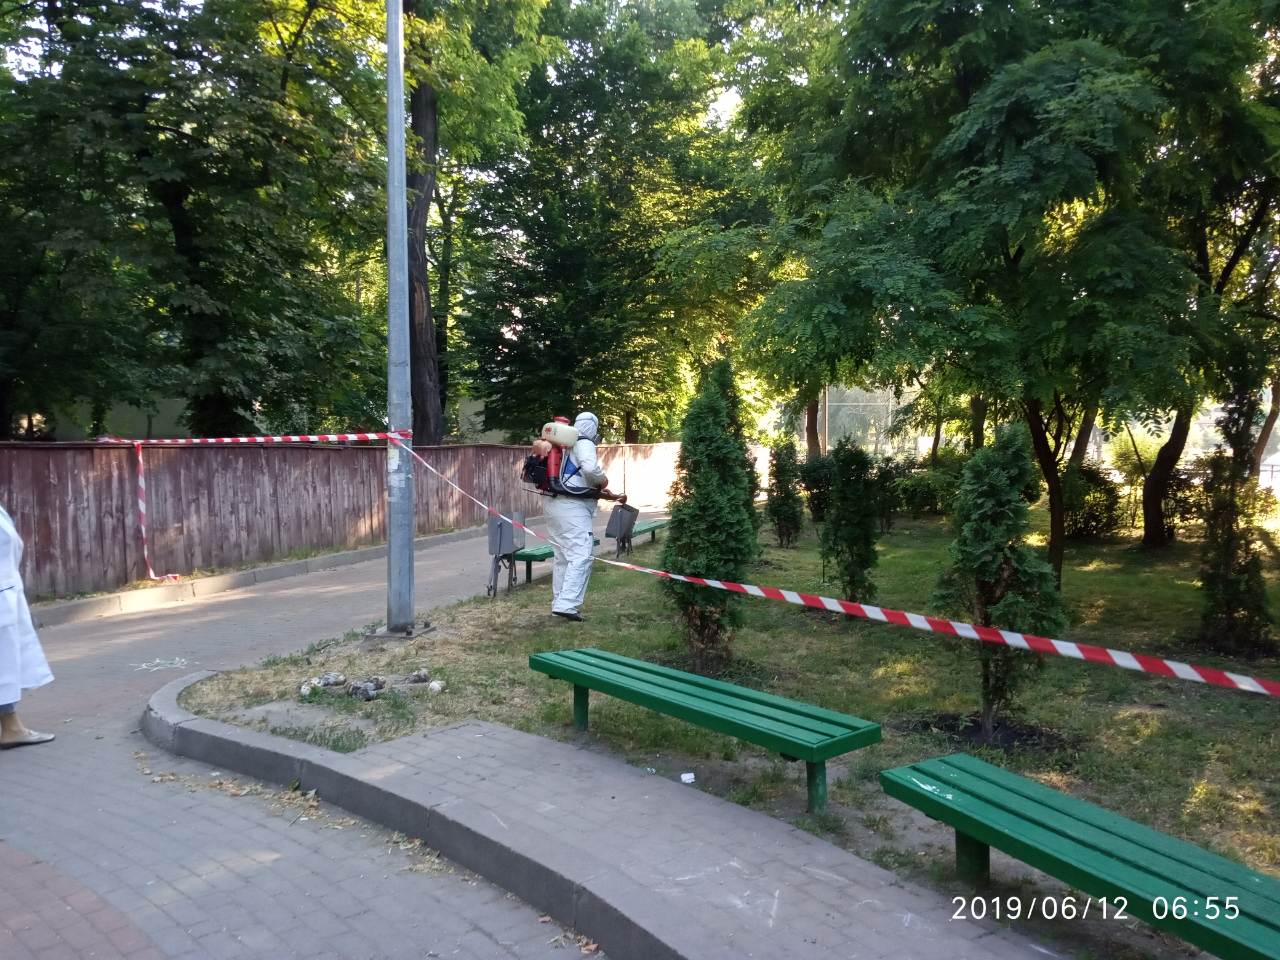 Два парка в Подольском районе Киева обработали от клещей